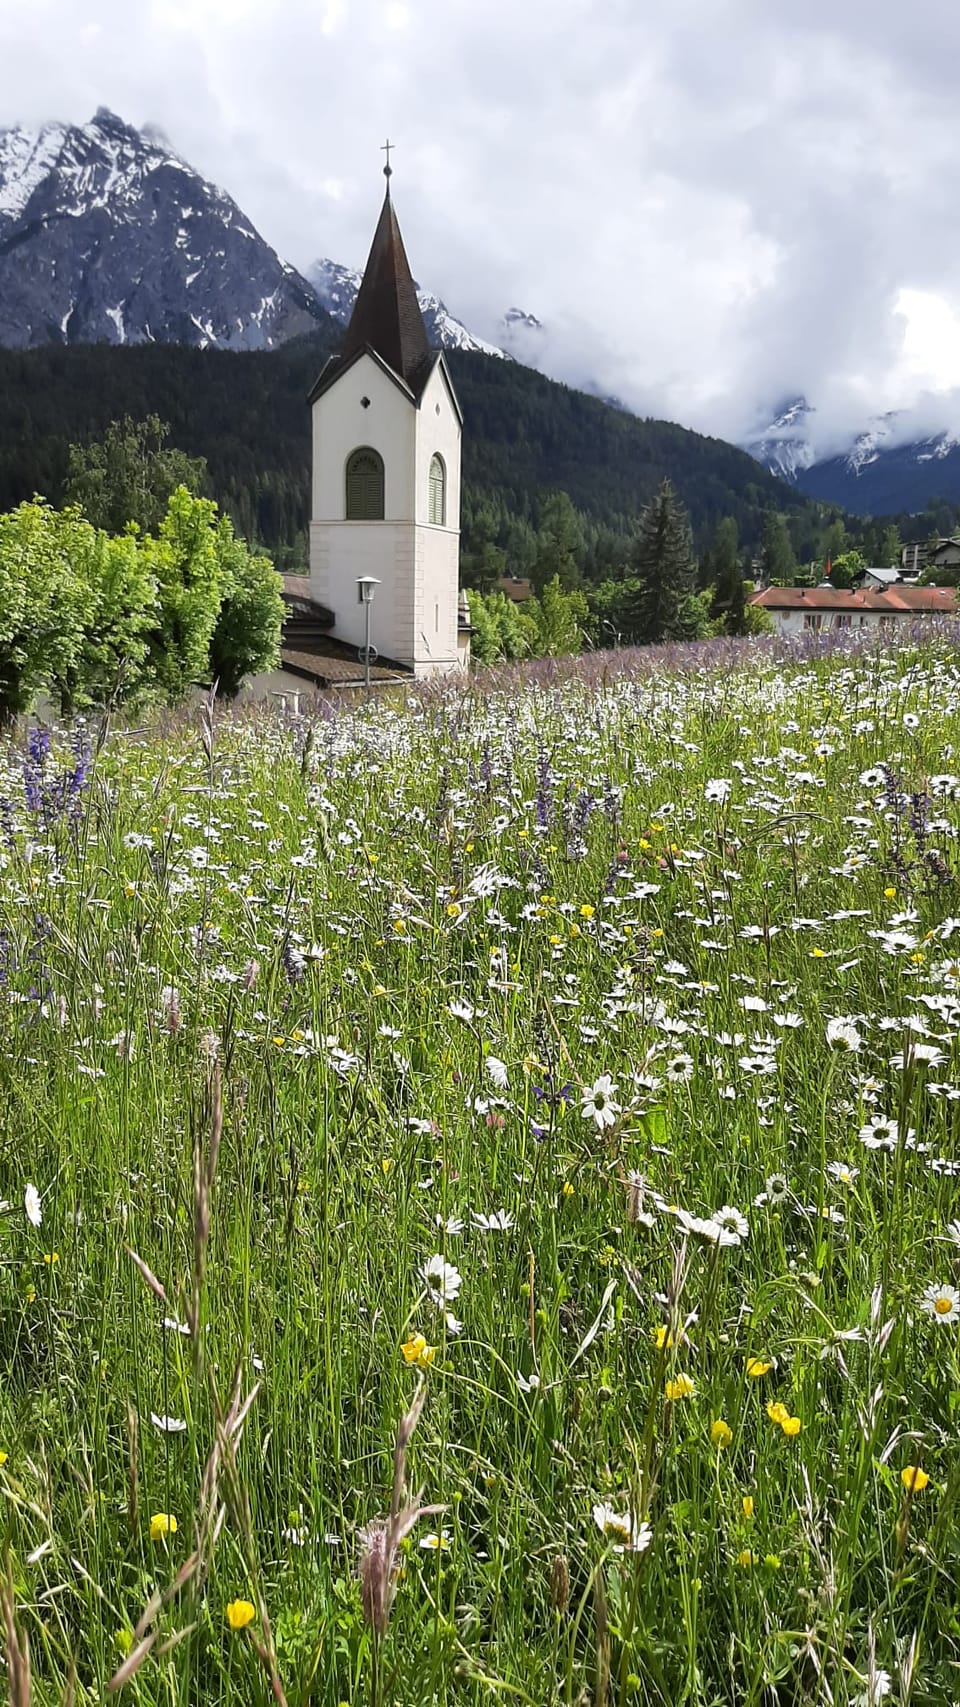 Kirche in einer Blumenwiese vor schneebedeckten Bergen.